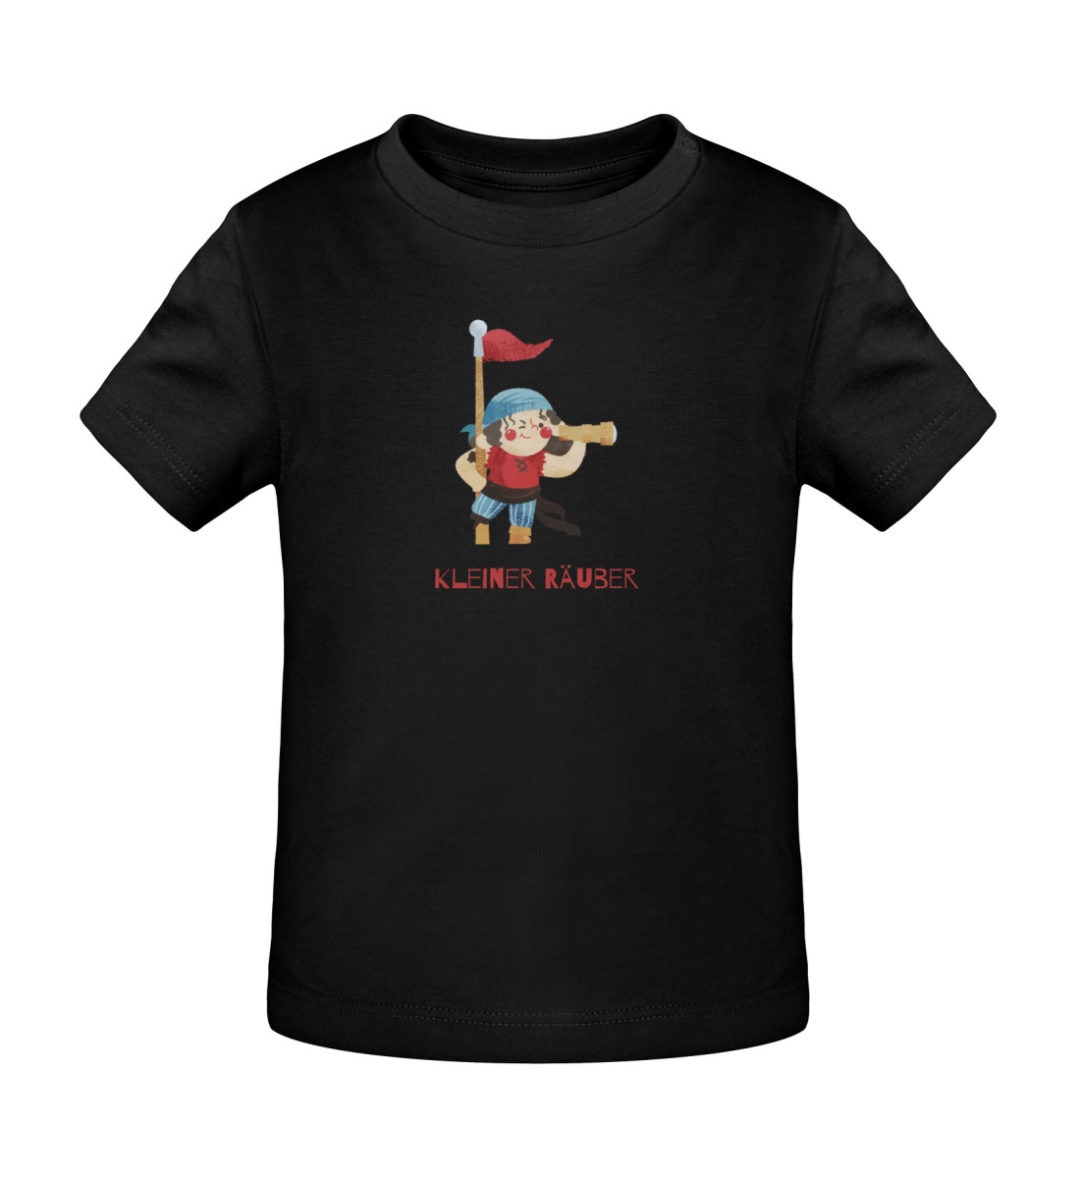 Kleiner Räuber - Baby Creator T-Shirt ST/ST-16